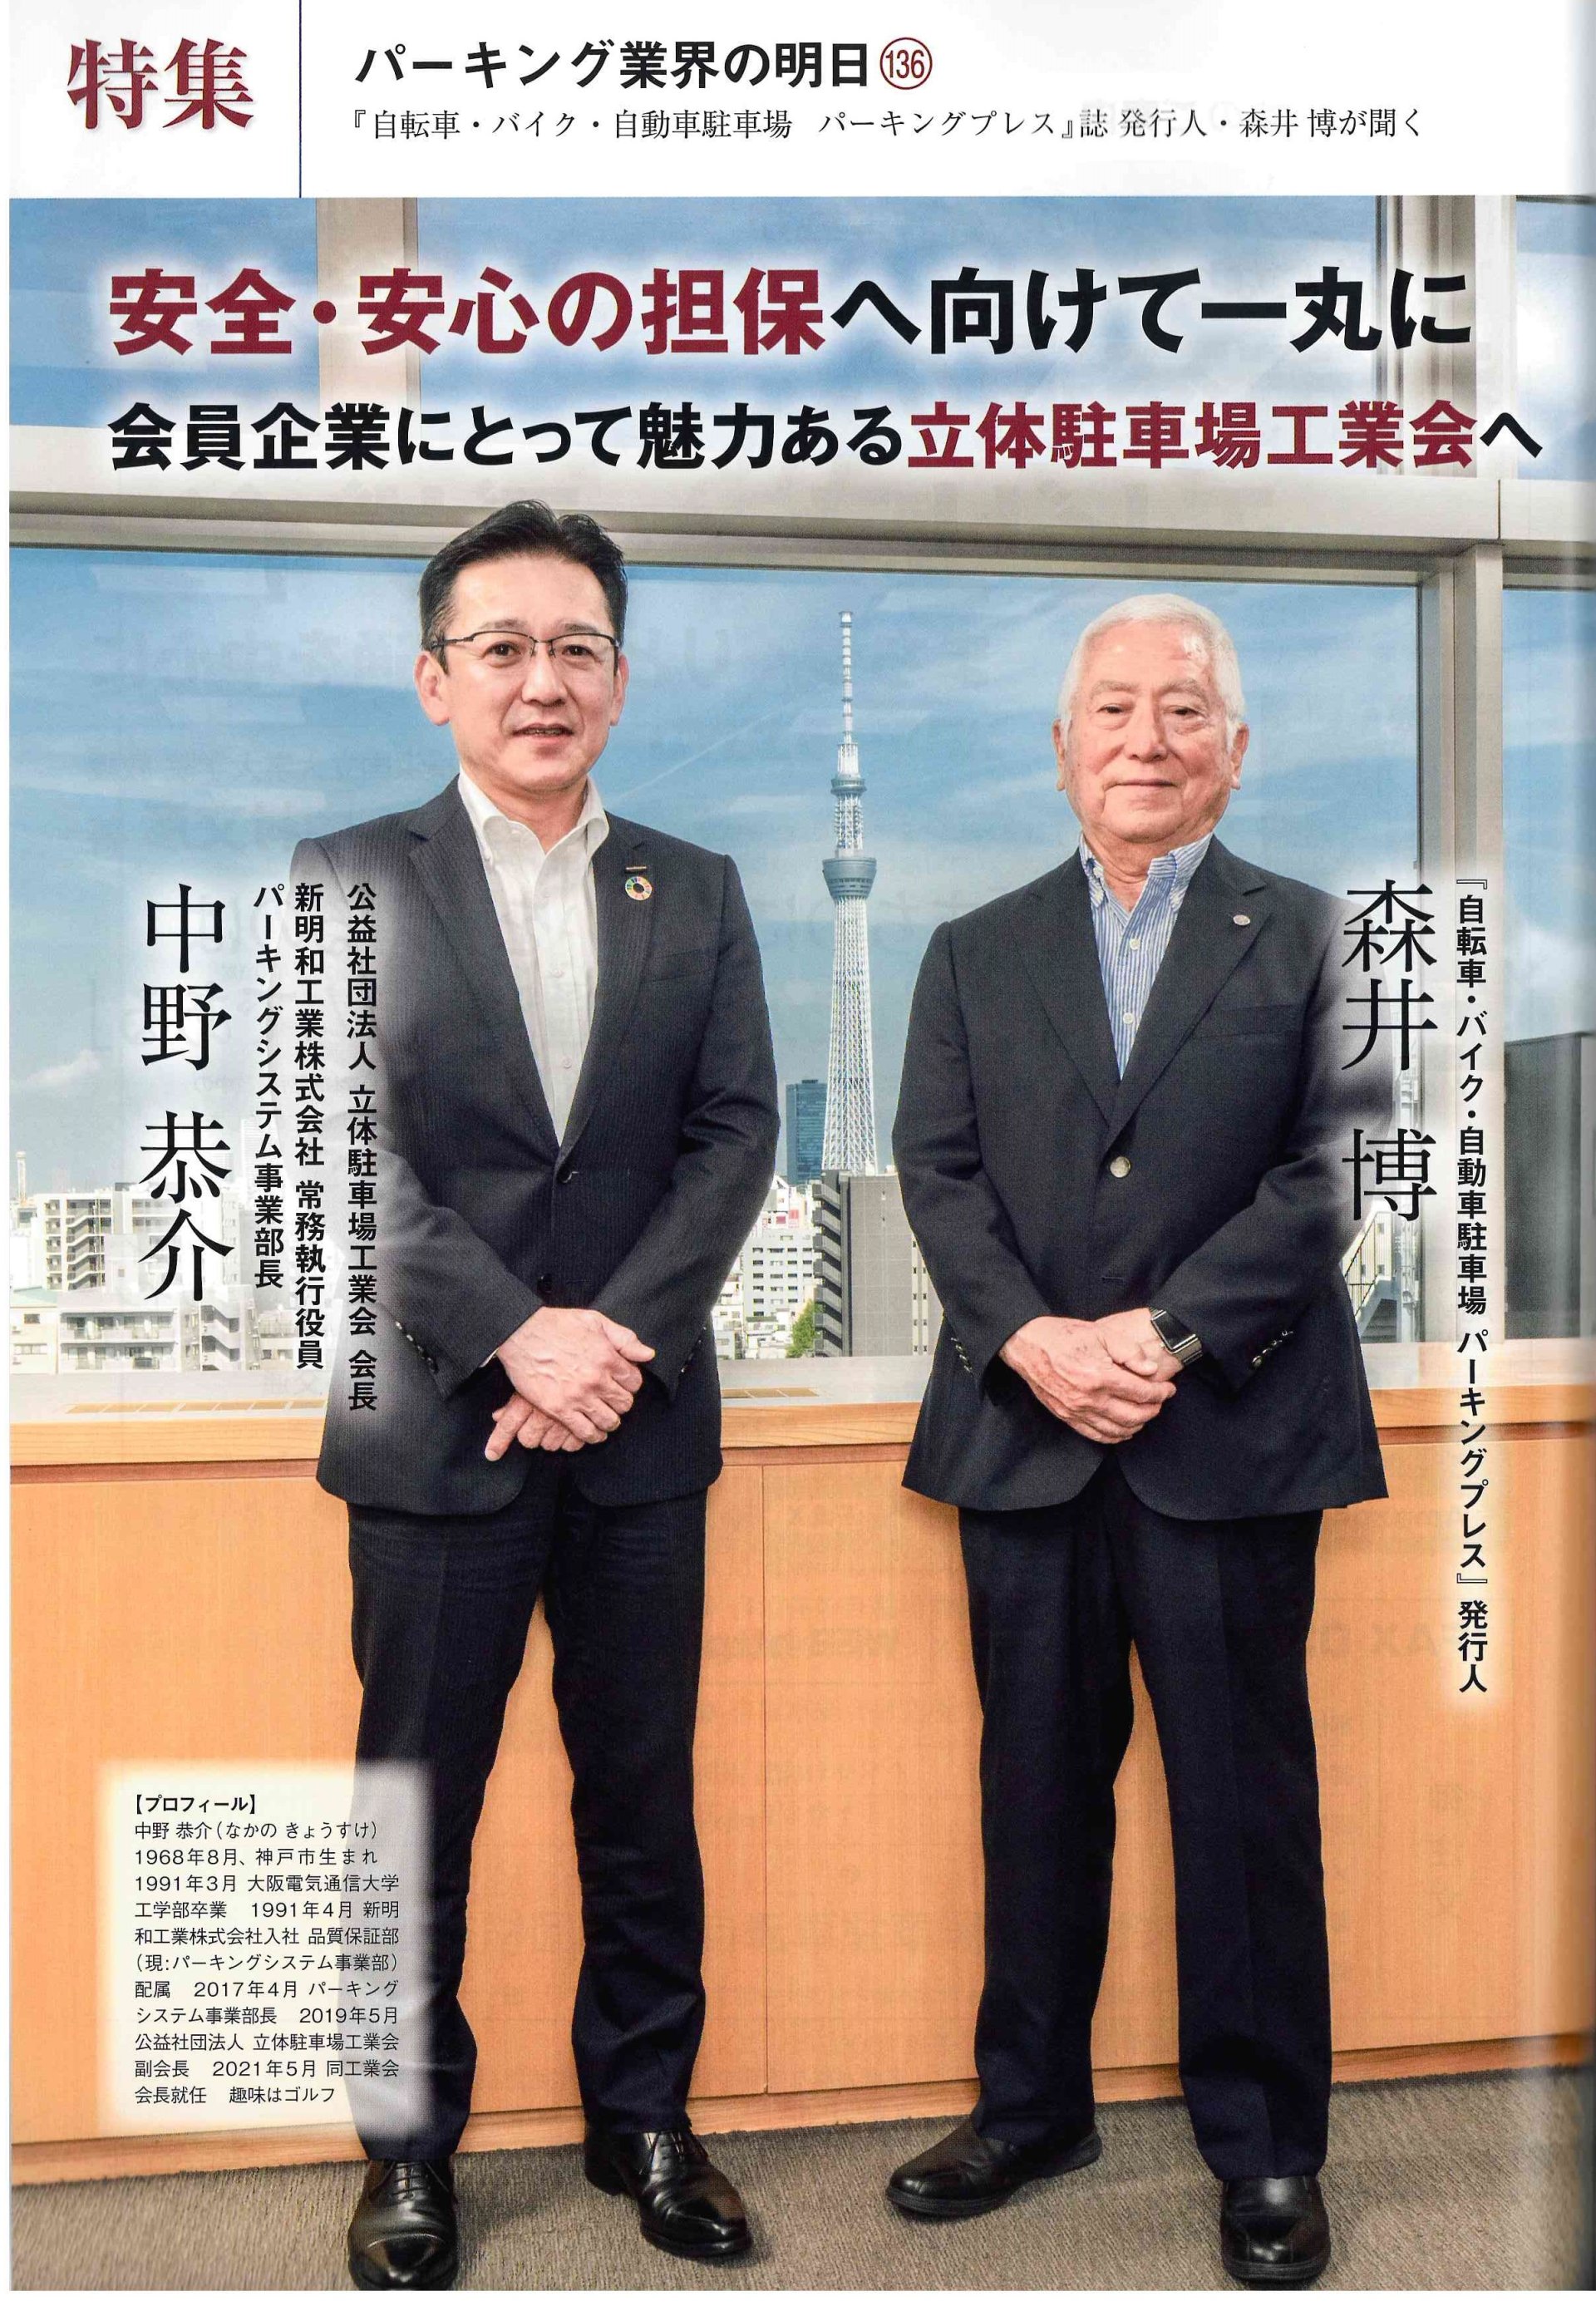 บทสัมภาษณ์ระหว่าง Mr. Kyosuke Nakano และ บรรณาธิการนิตยสาร Parking Press 